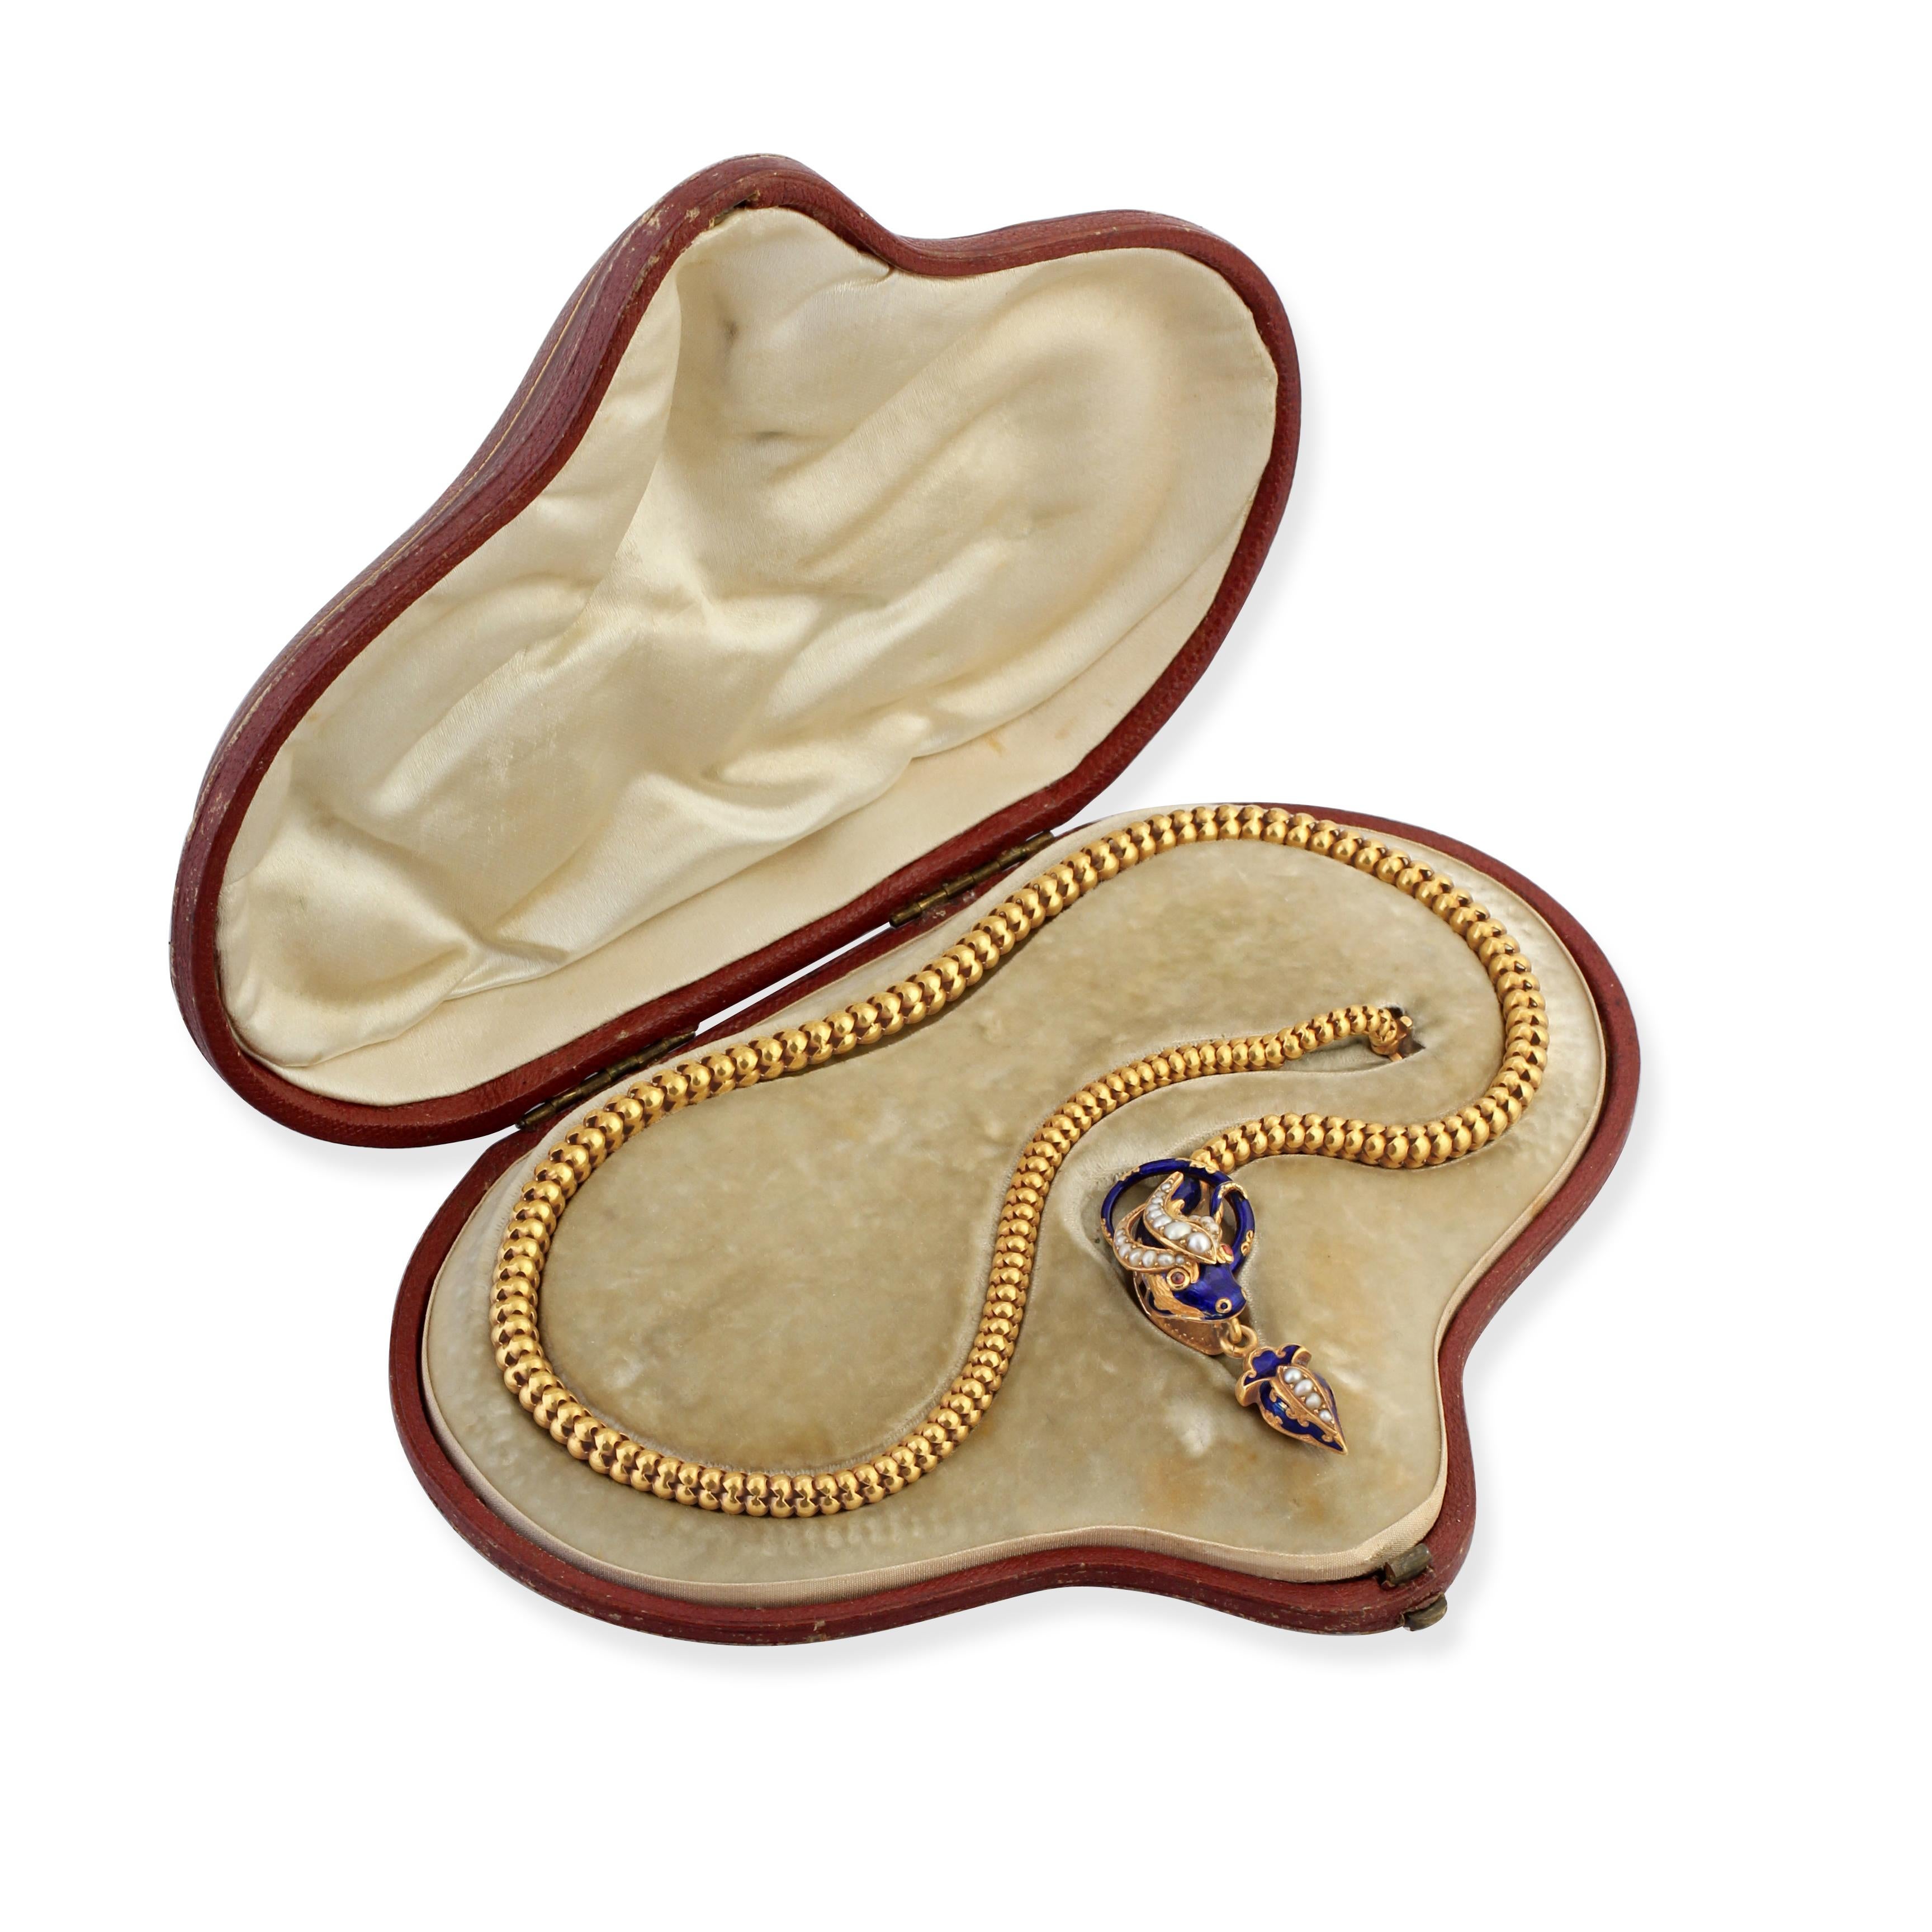 Collier serpent en or et émail du milieu du 19e siècle, formé d'un corps articulé et d'une tête sertie d'émail bleu, de perles et de rubis.
